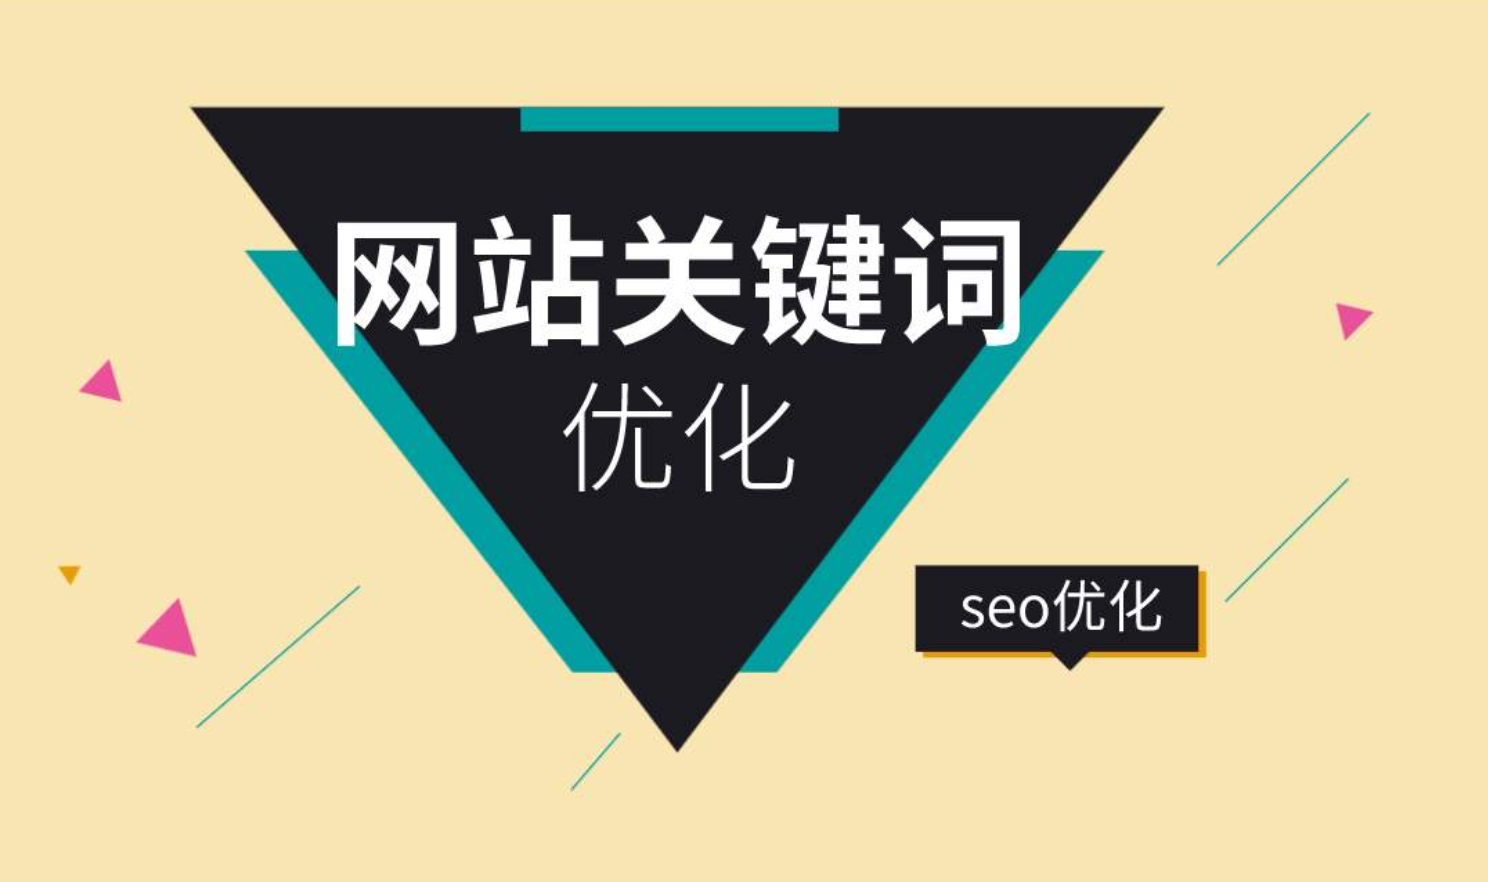 seo的相关基础知识_seo相关书籍_seo 相关搜索